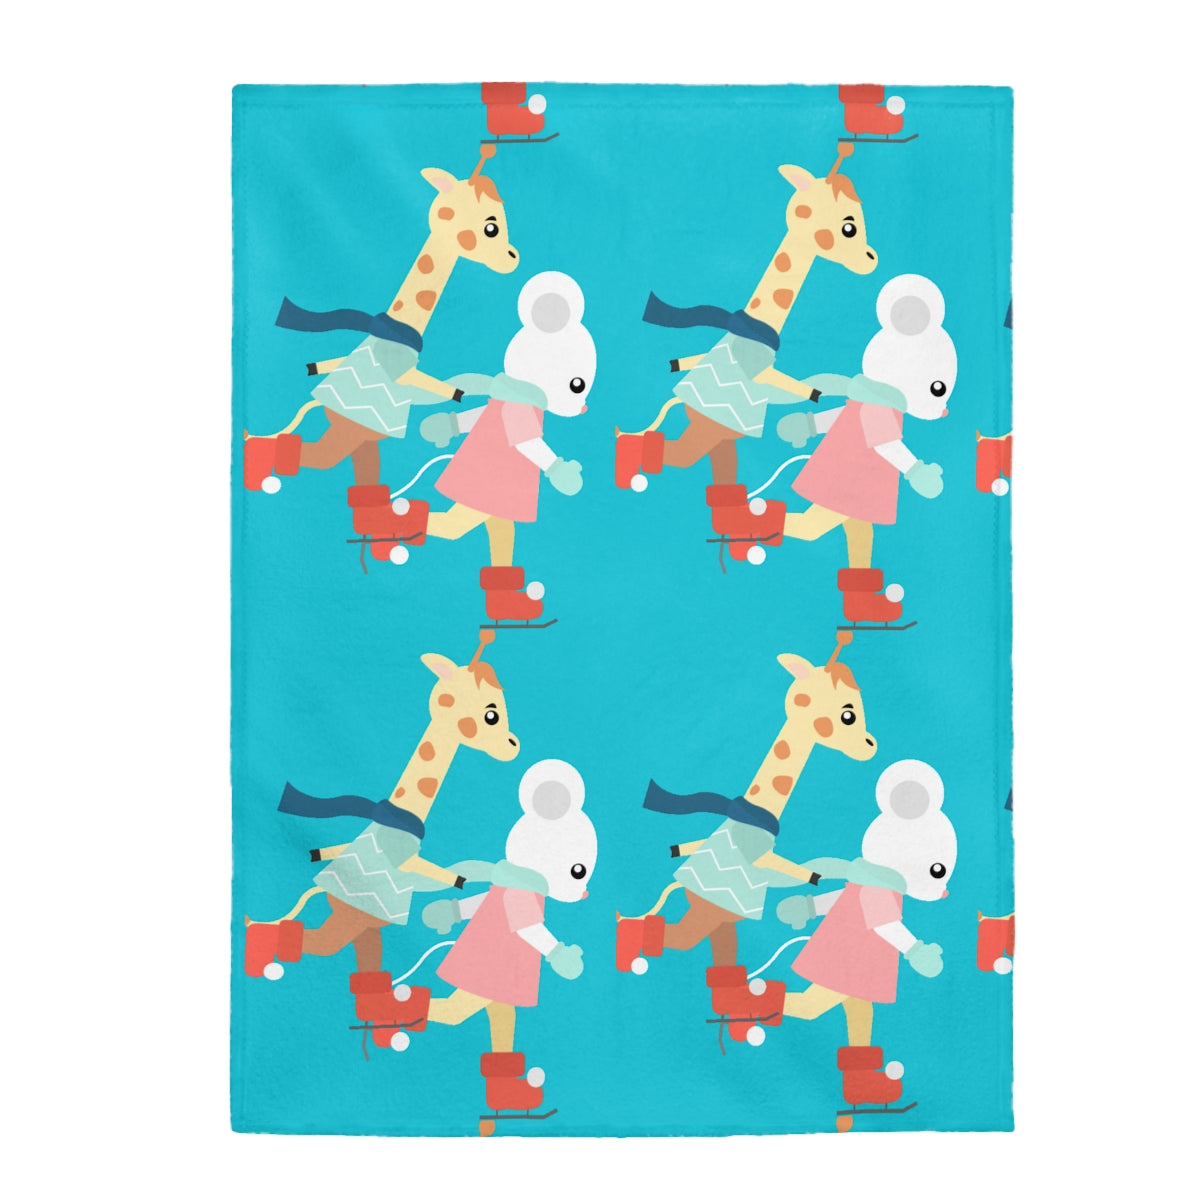 Velveteen Plush Blanket for Kids, Teens, Toddlers, Newborn Blankets, All Sizes